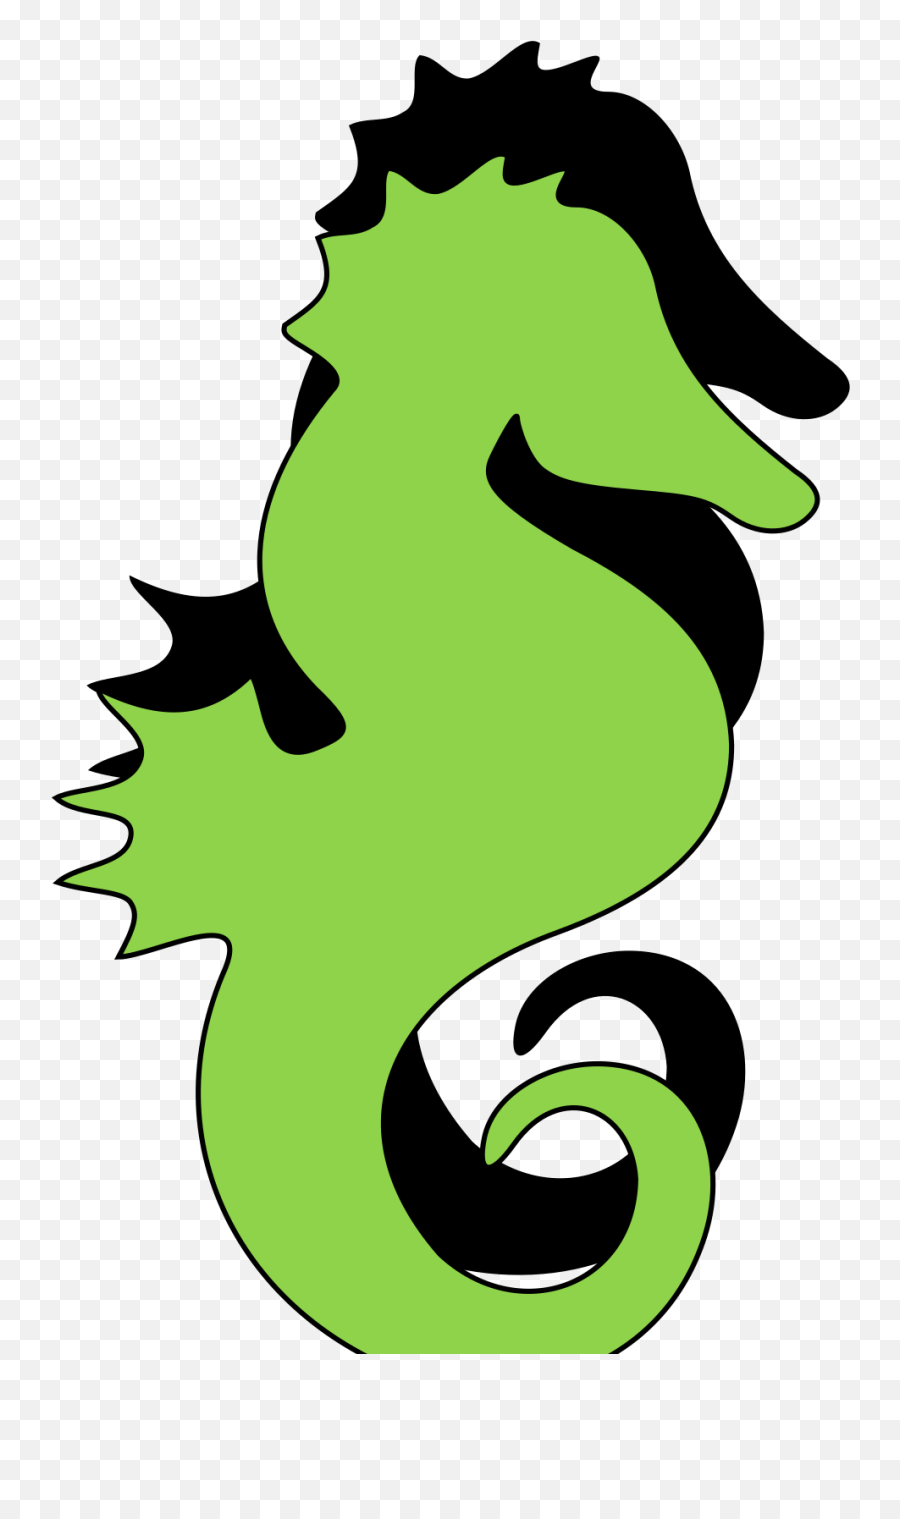 Green Black Seahorse Svg Vector Green Black Seahorse - Vectorizado Silueta Caballito De Mar Emoji,Seahorse Clipart